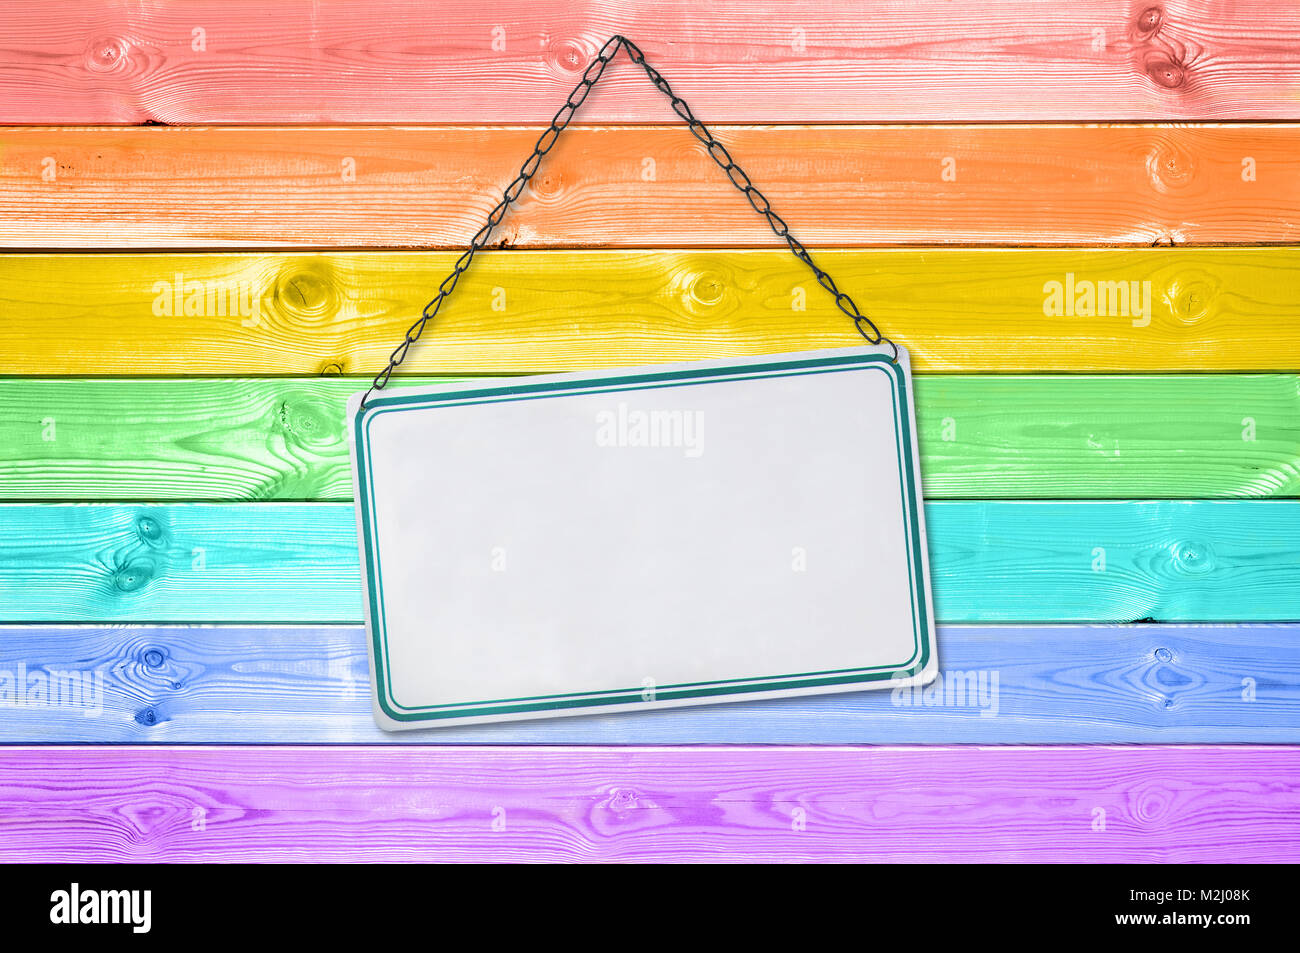 Blech Schild auf einem Pastell bunten Regenbogen bemalt Holzplanken Hintergrund Stockfoto